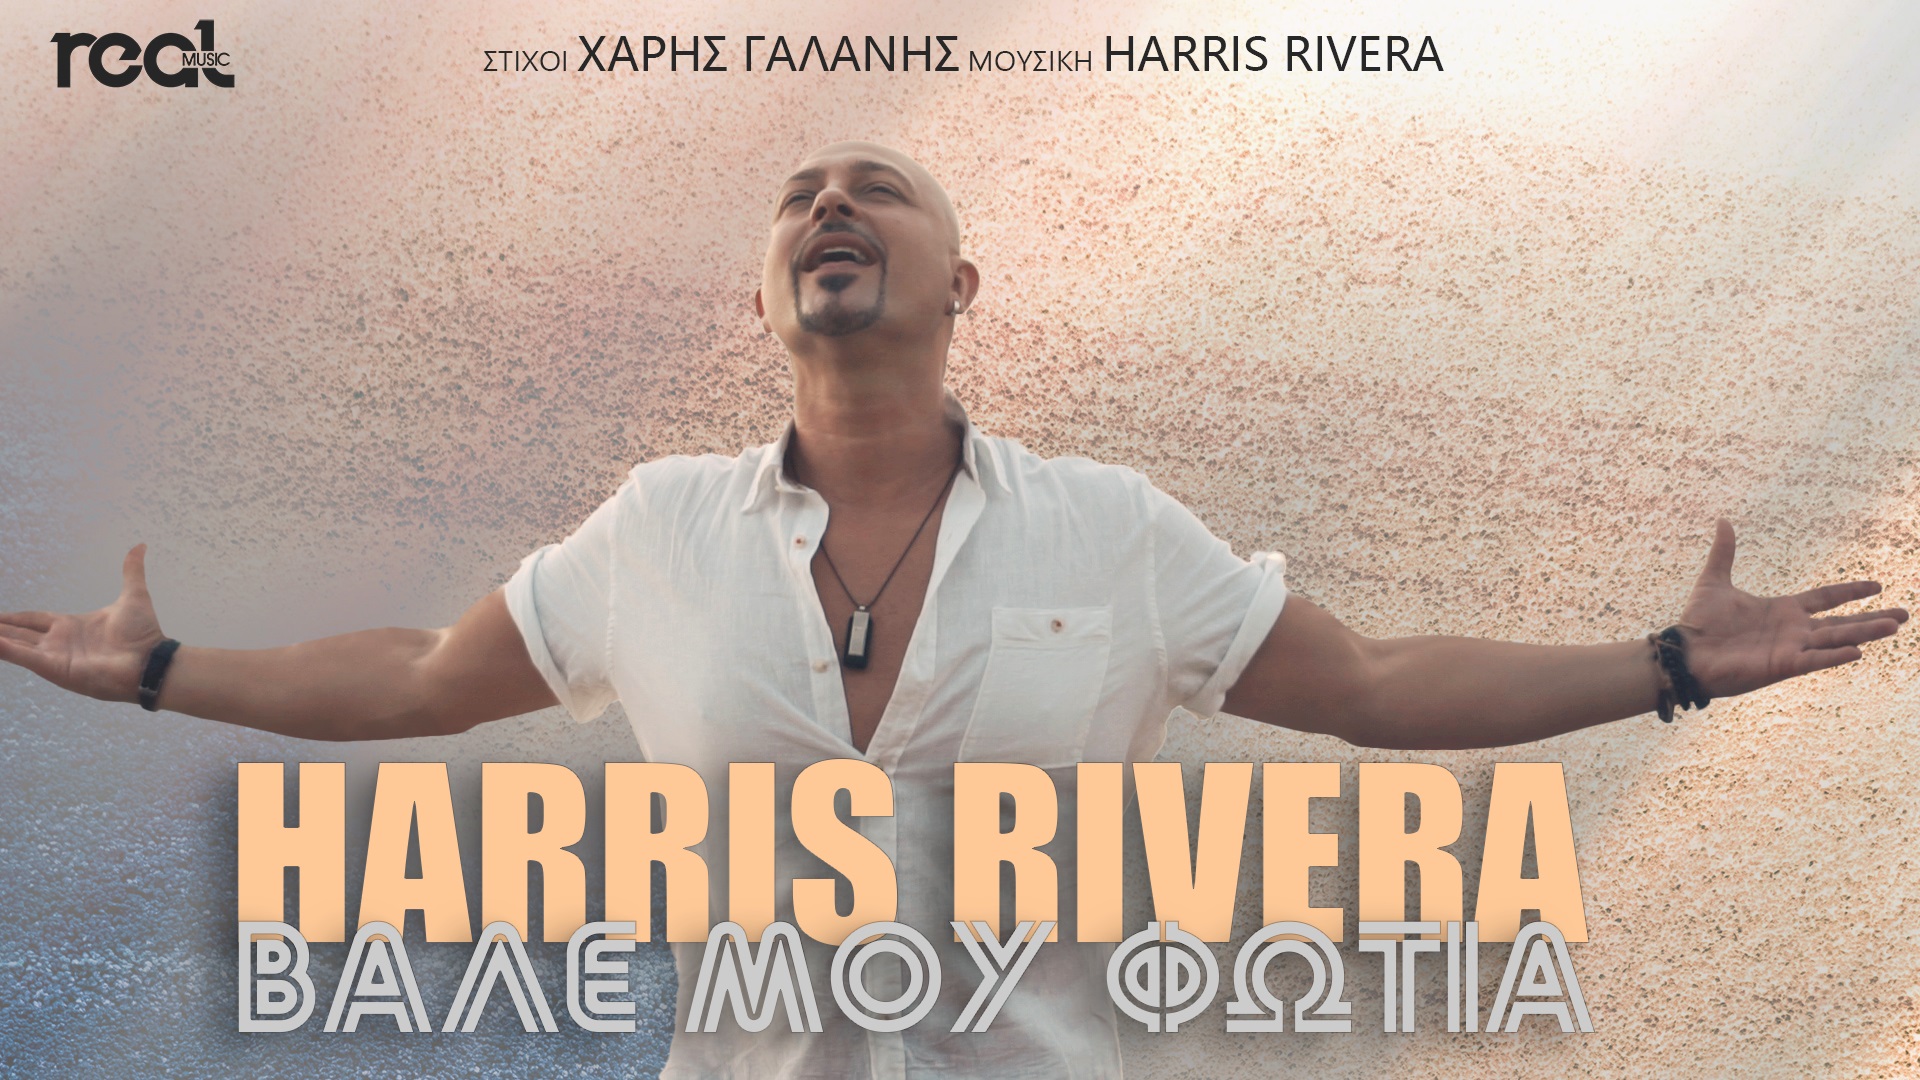 Η Real Music Greece παρουσιάζει το νέο τραγούδι του Harris Rivera με γενικό τίτλο «Βάλε μου φωτιά»